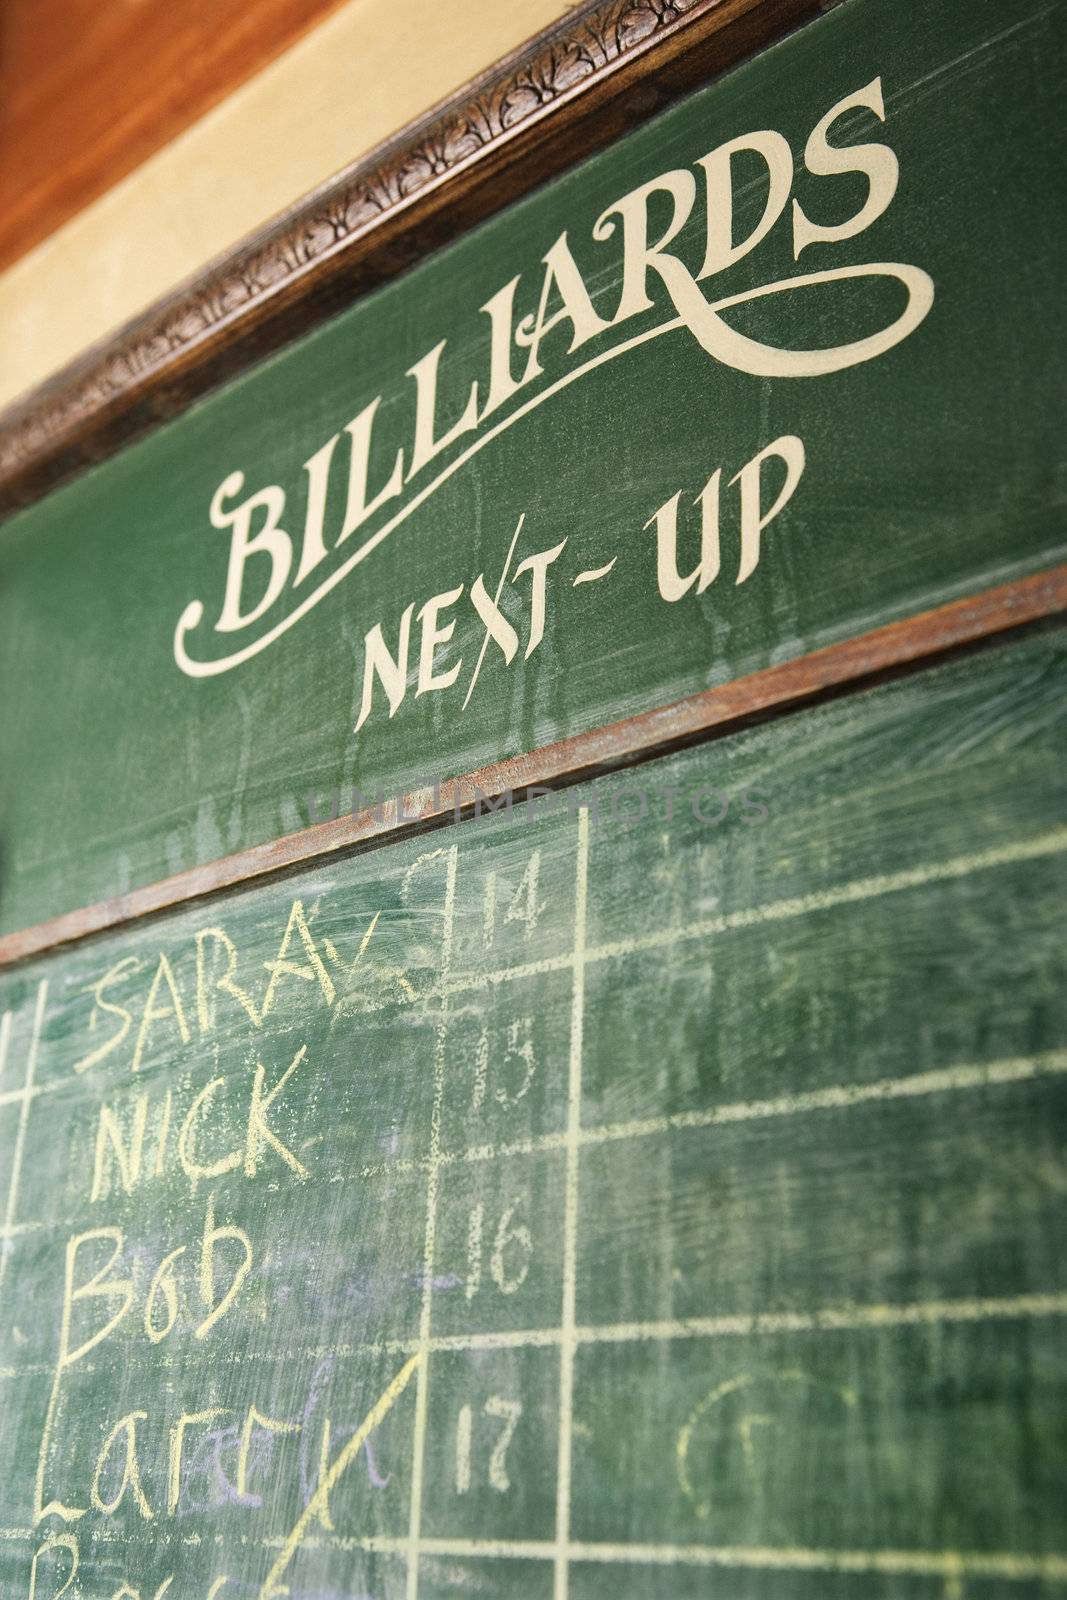 Billiards chalkboard. by iofoto